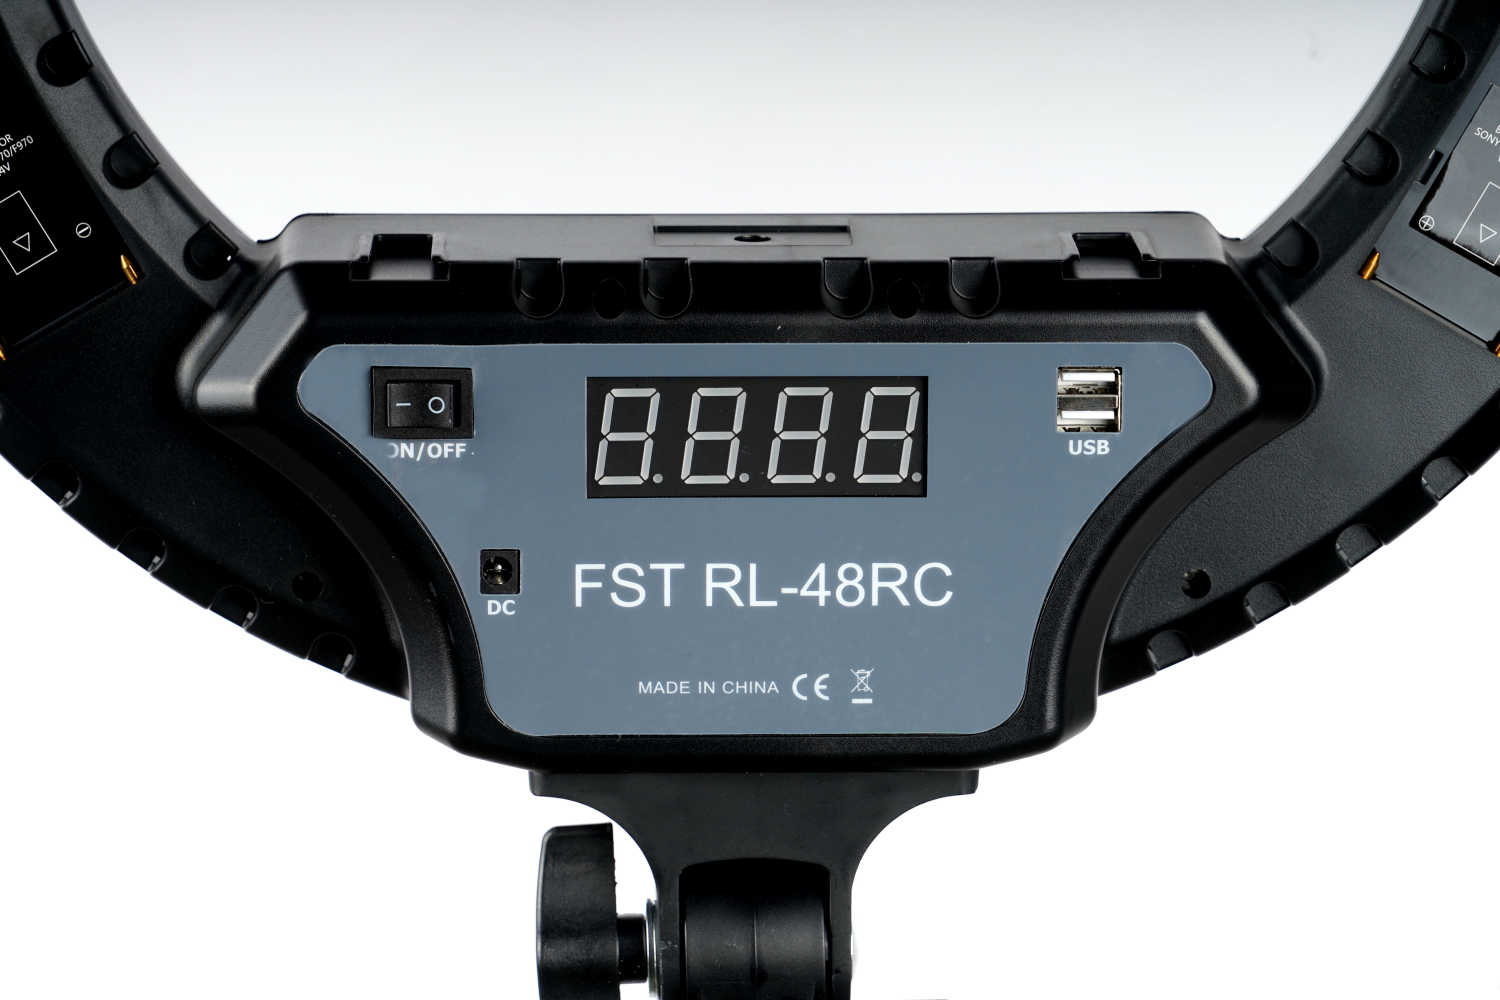    FST RL-48RC